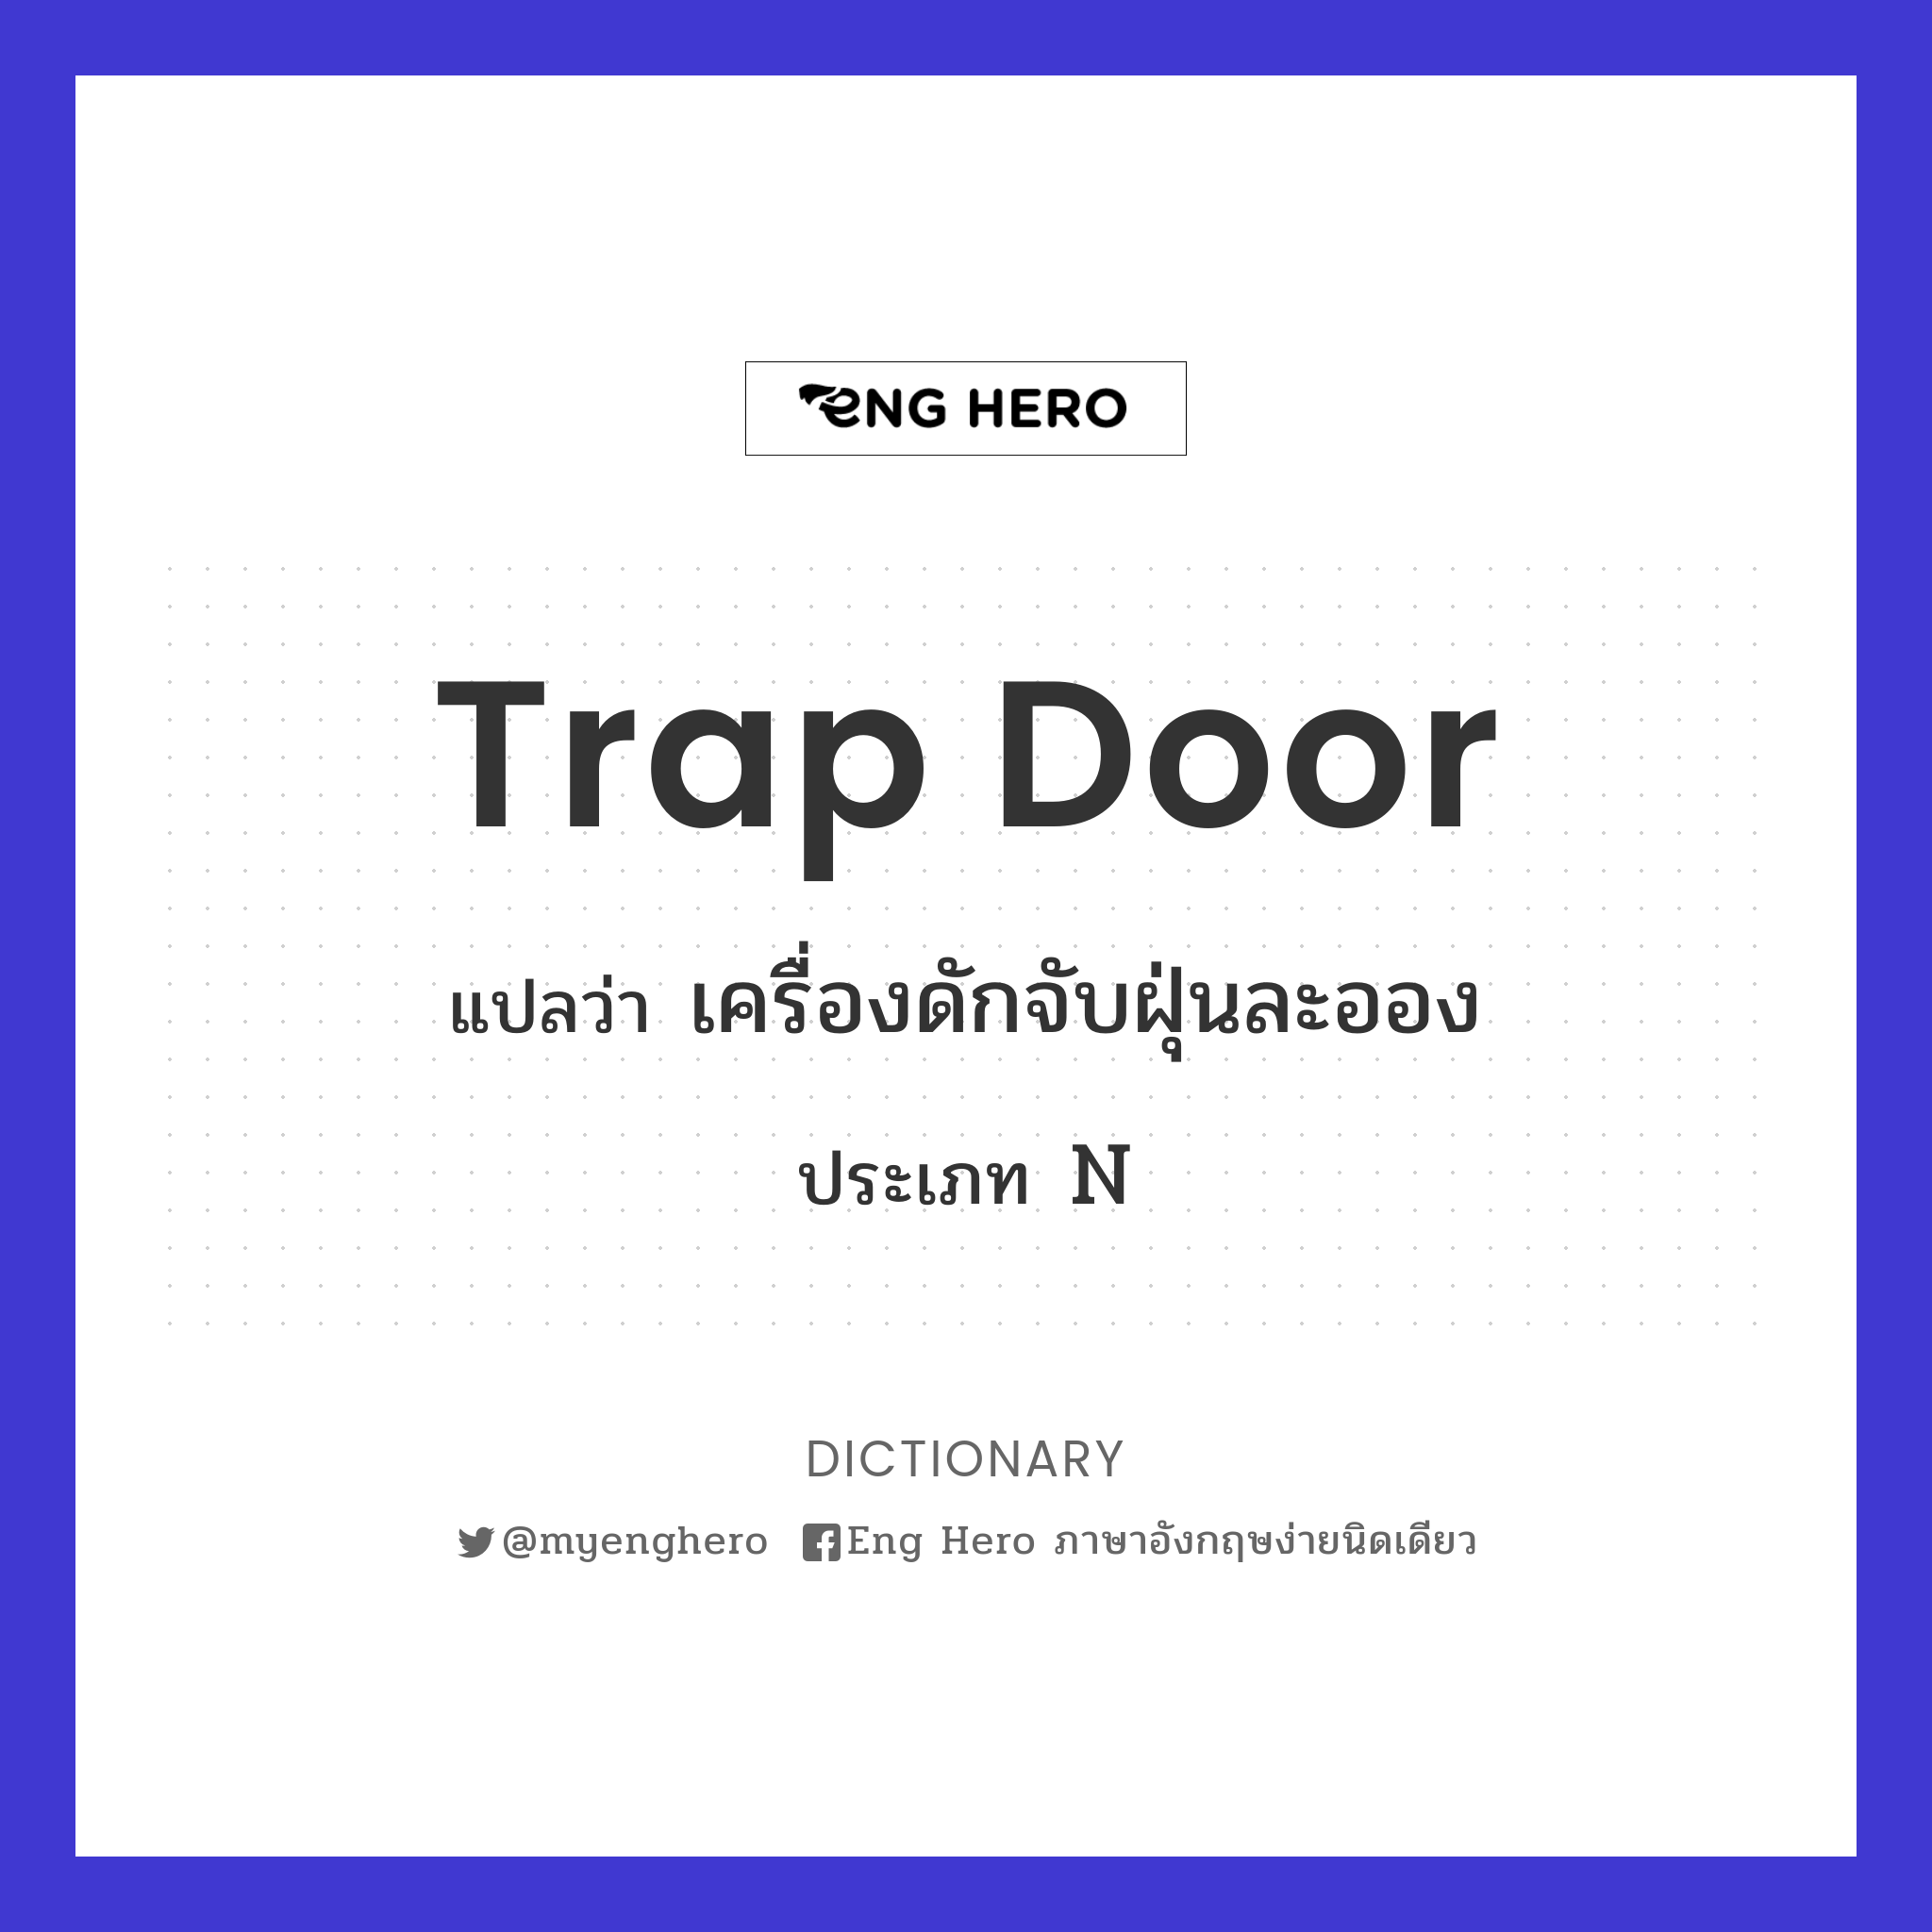 trap door